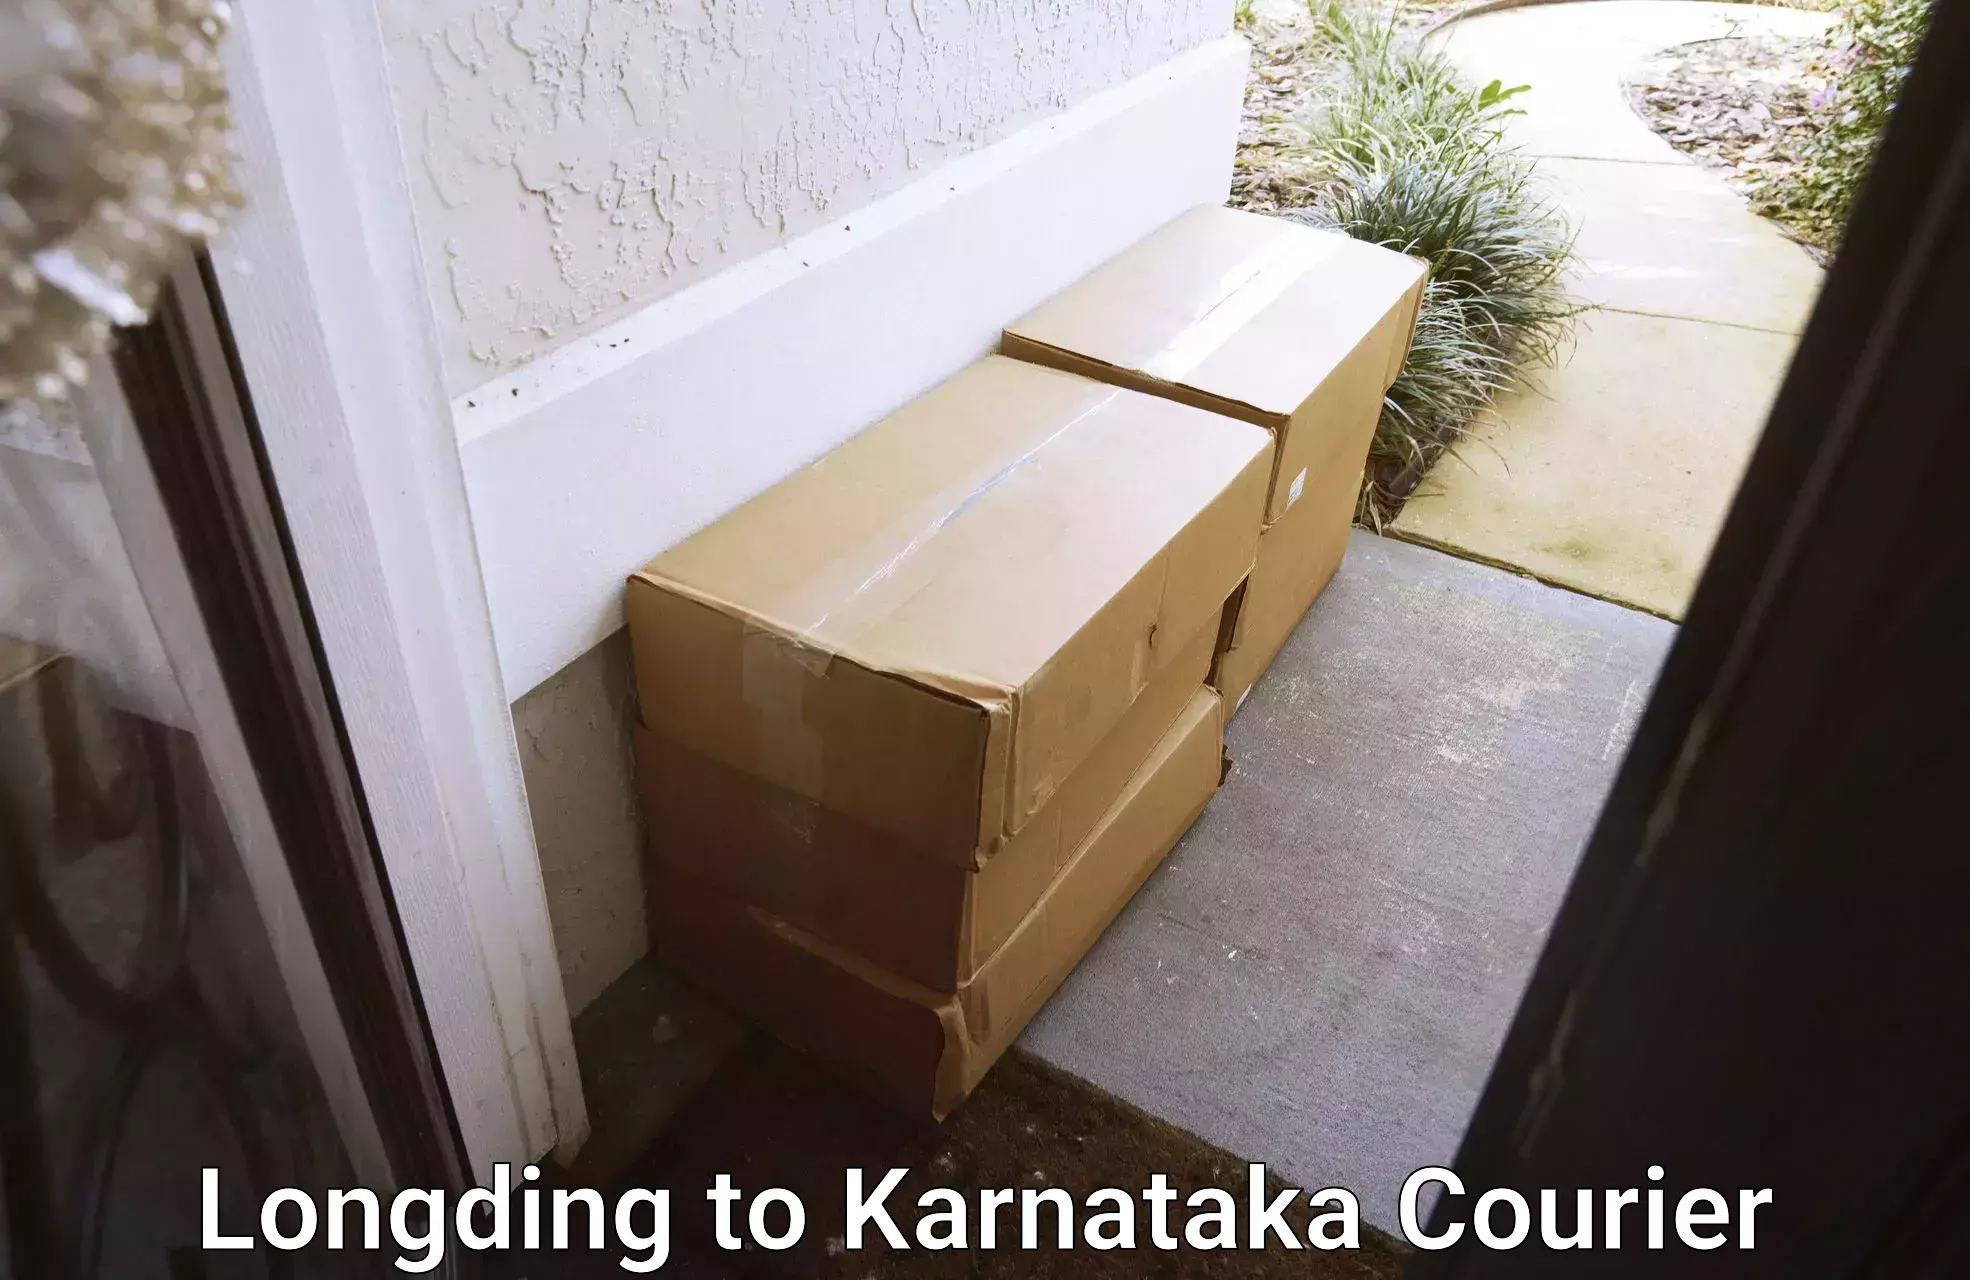 Digital courier platforms Longding to Karnataka